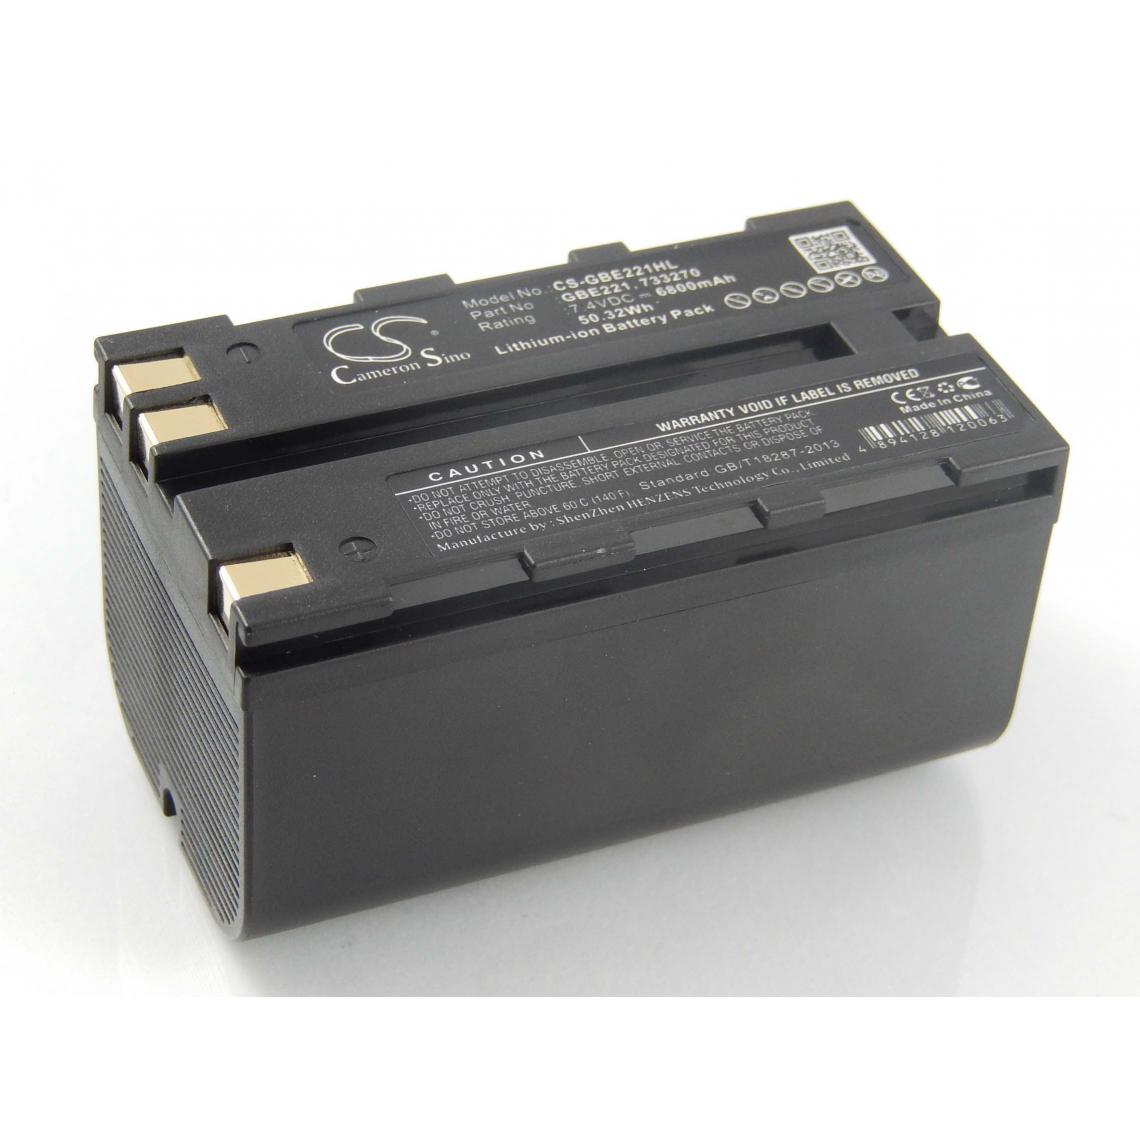 Vhbw - vhbw Batterie compatible avec Leica GS20, RCS1100, RX1200, RX900 dispositif de mesure laser, outil de mesure (6800mAh, 7,4V, Li-ion) - Piles rechargeables